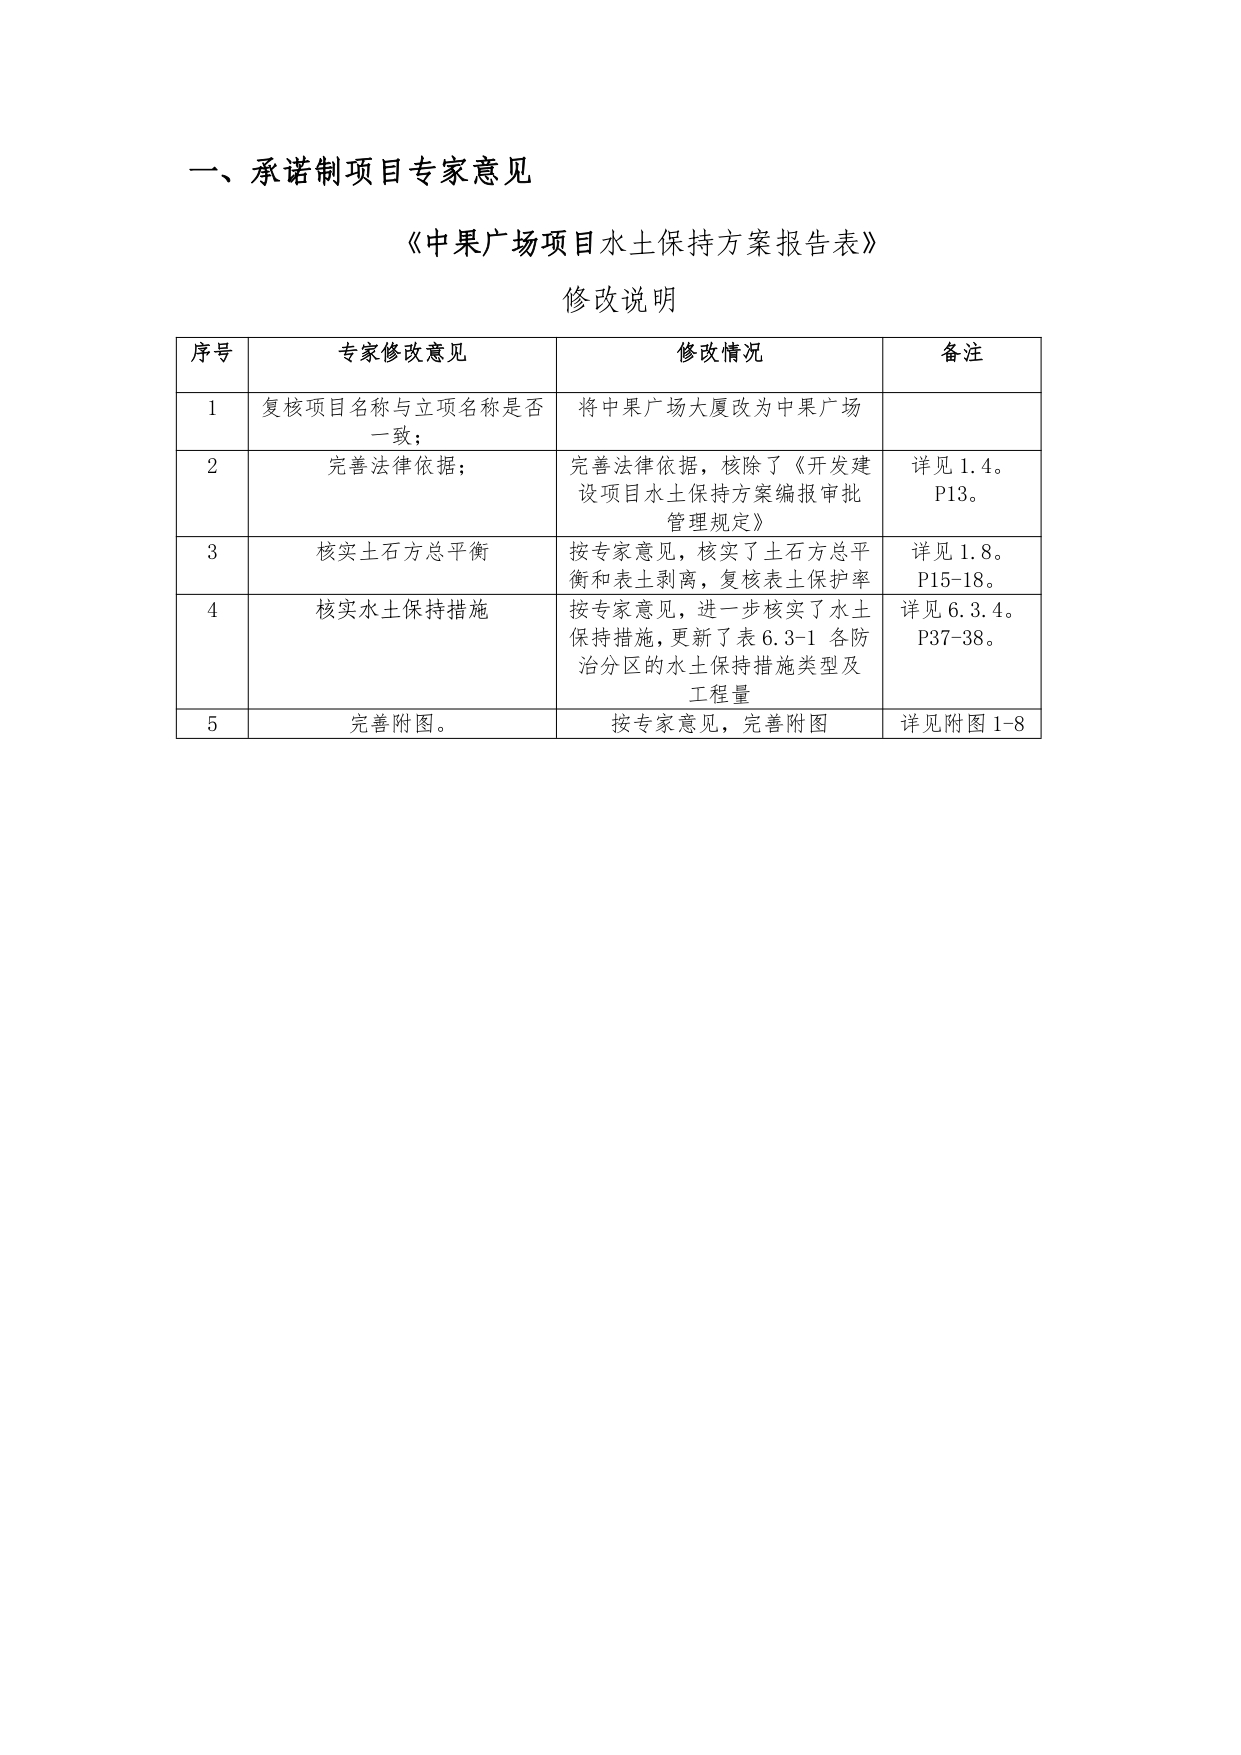 01-中果广场大厦项目水土保持报告表-打印_page-0005.jpg